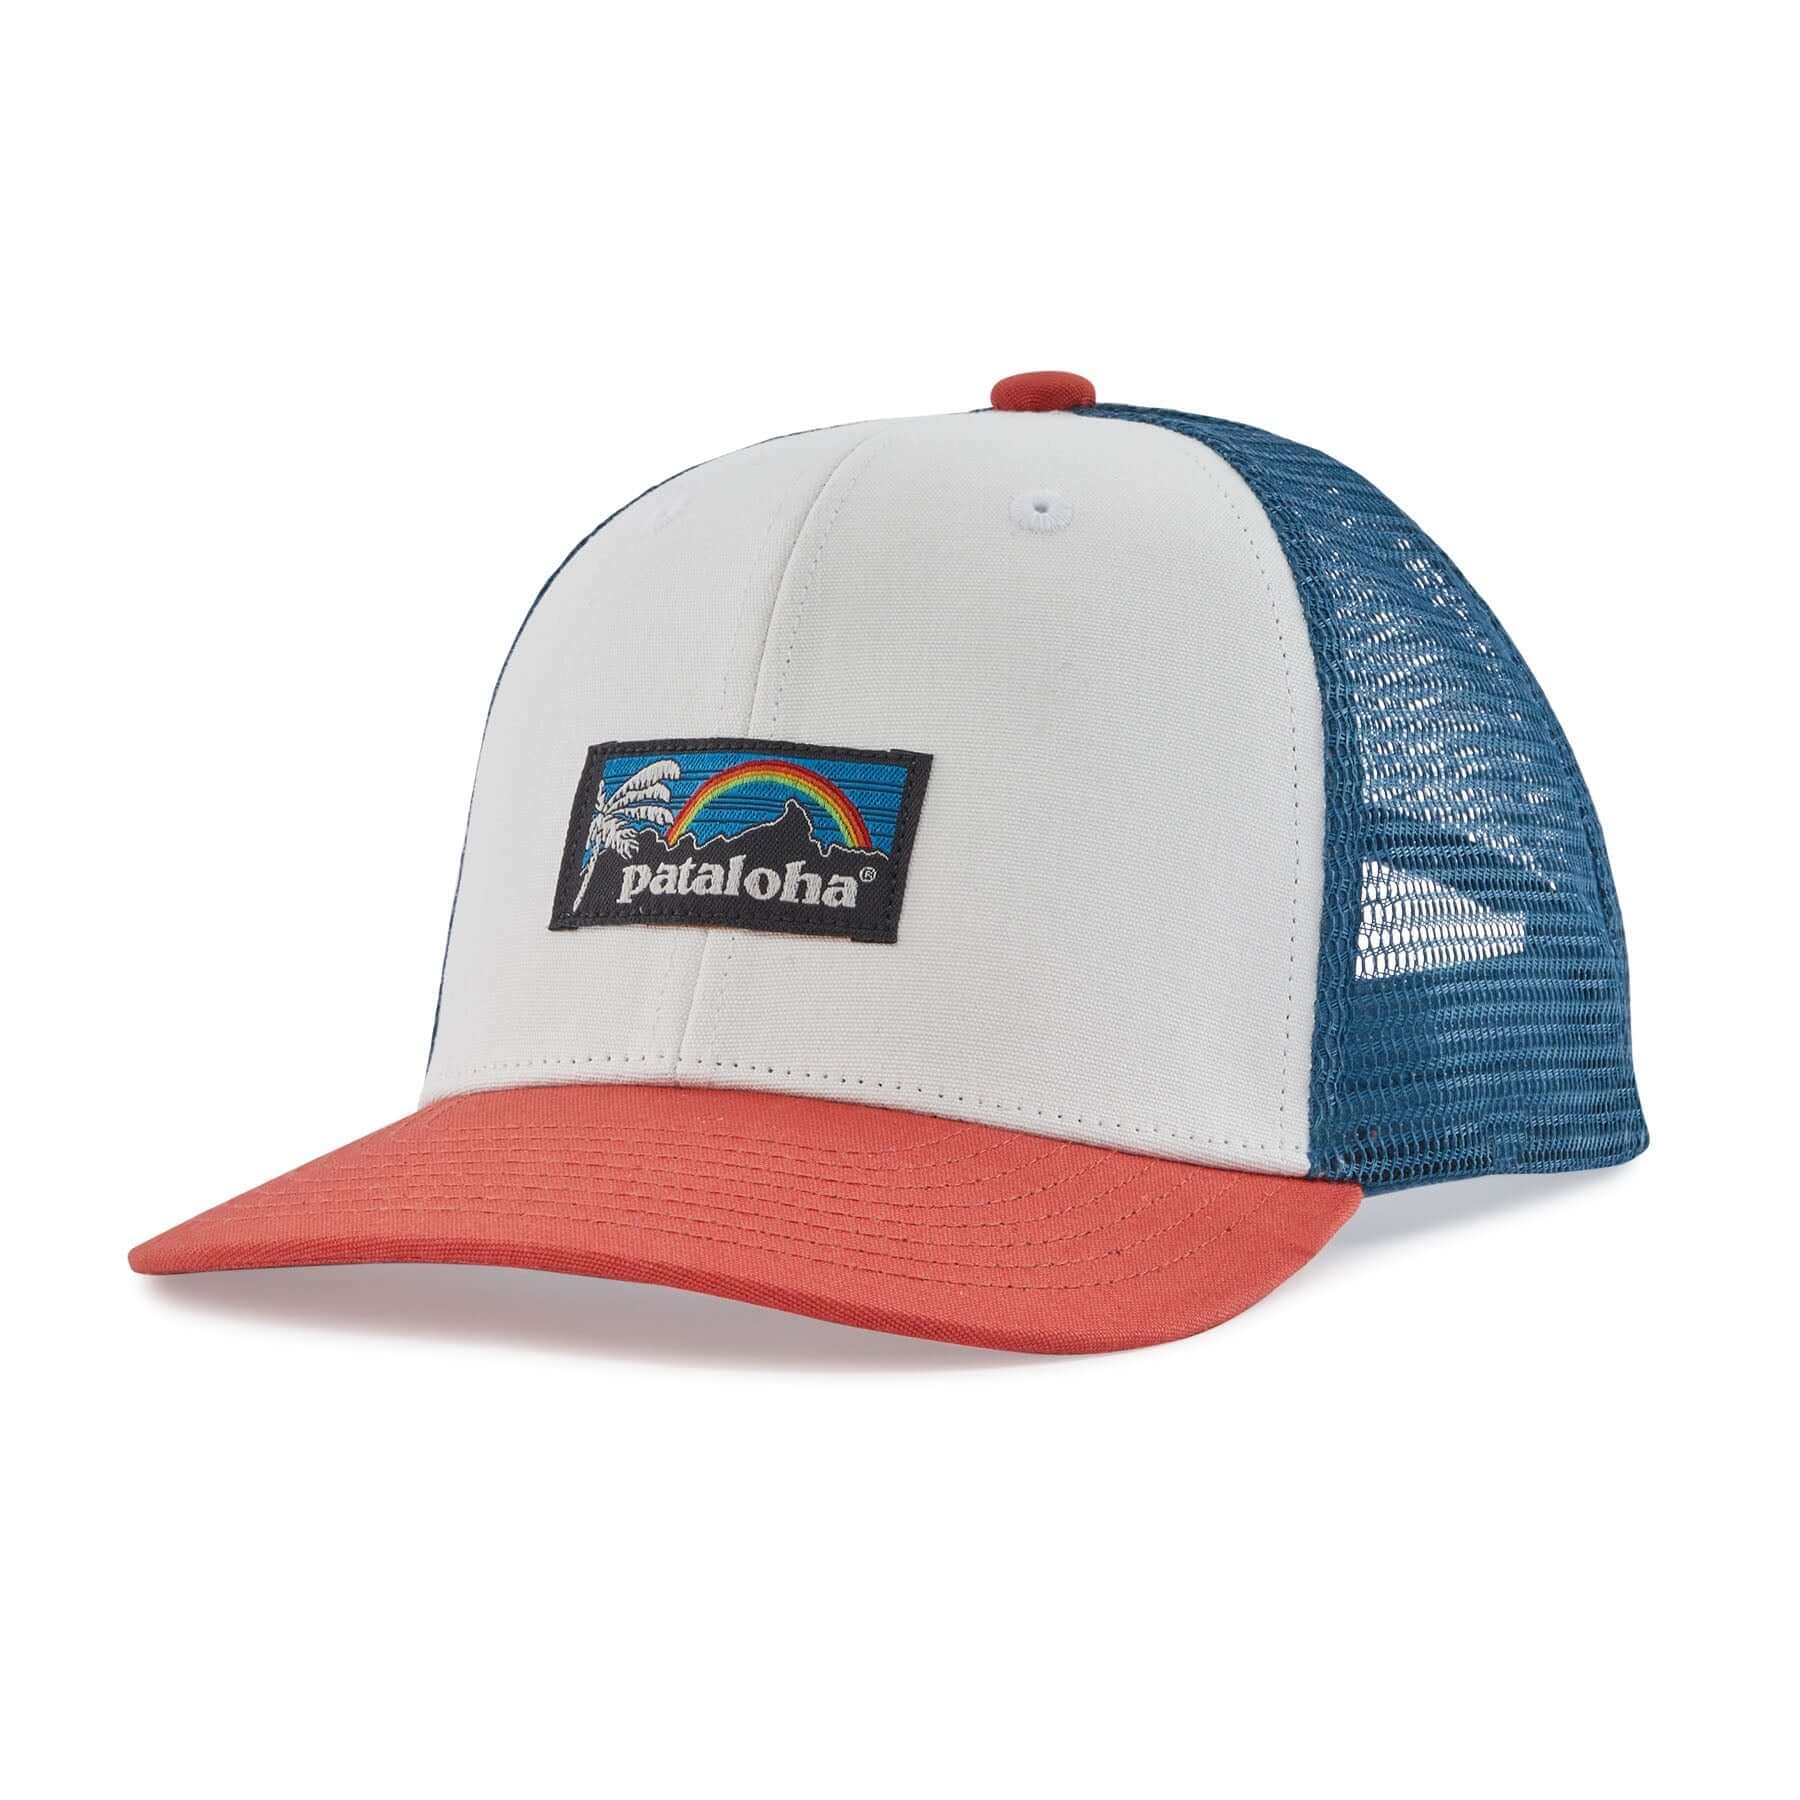 K's Trucker Hat